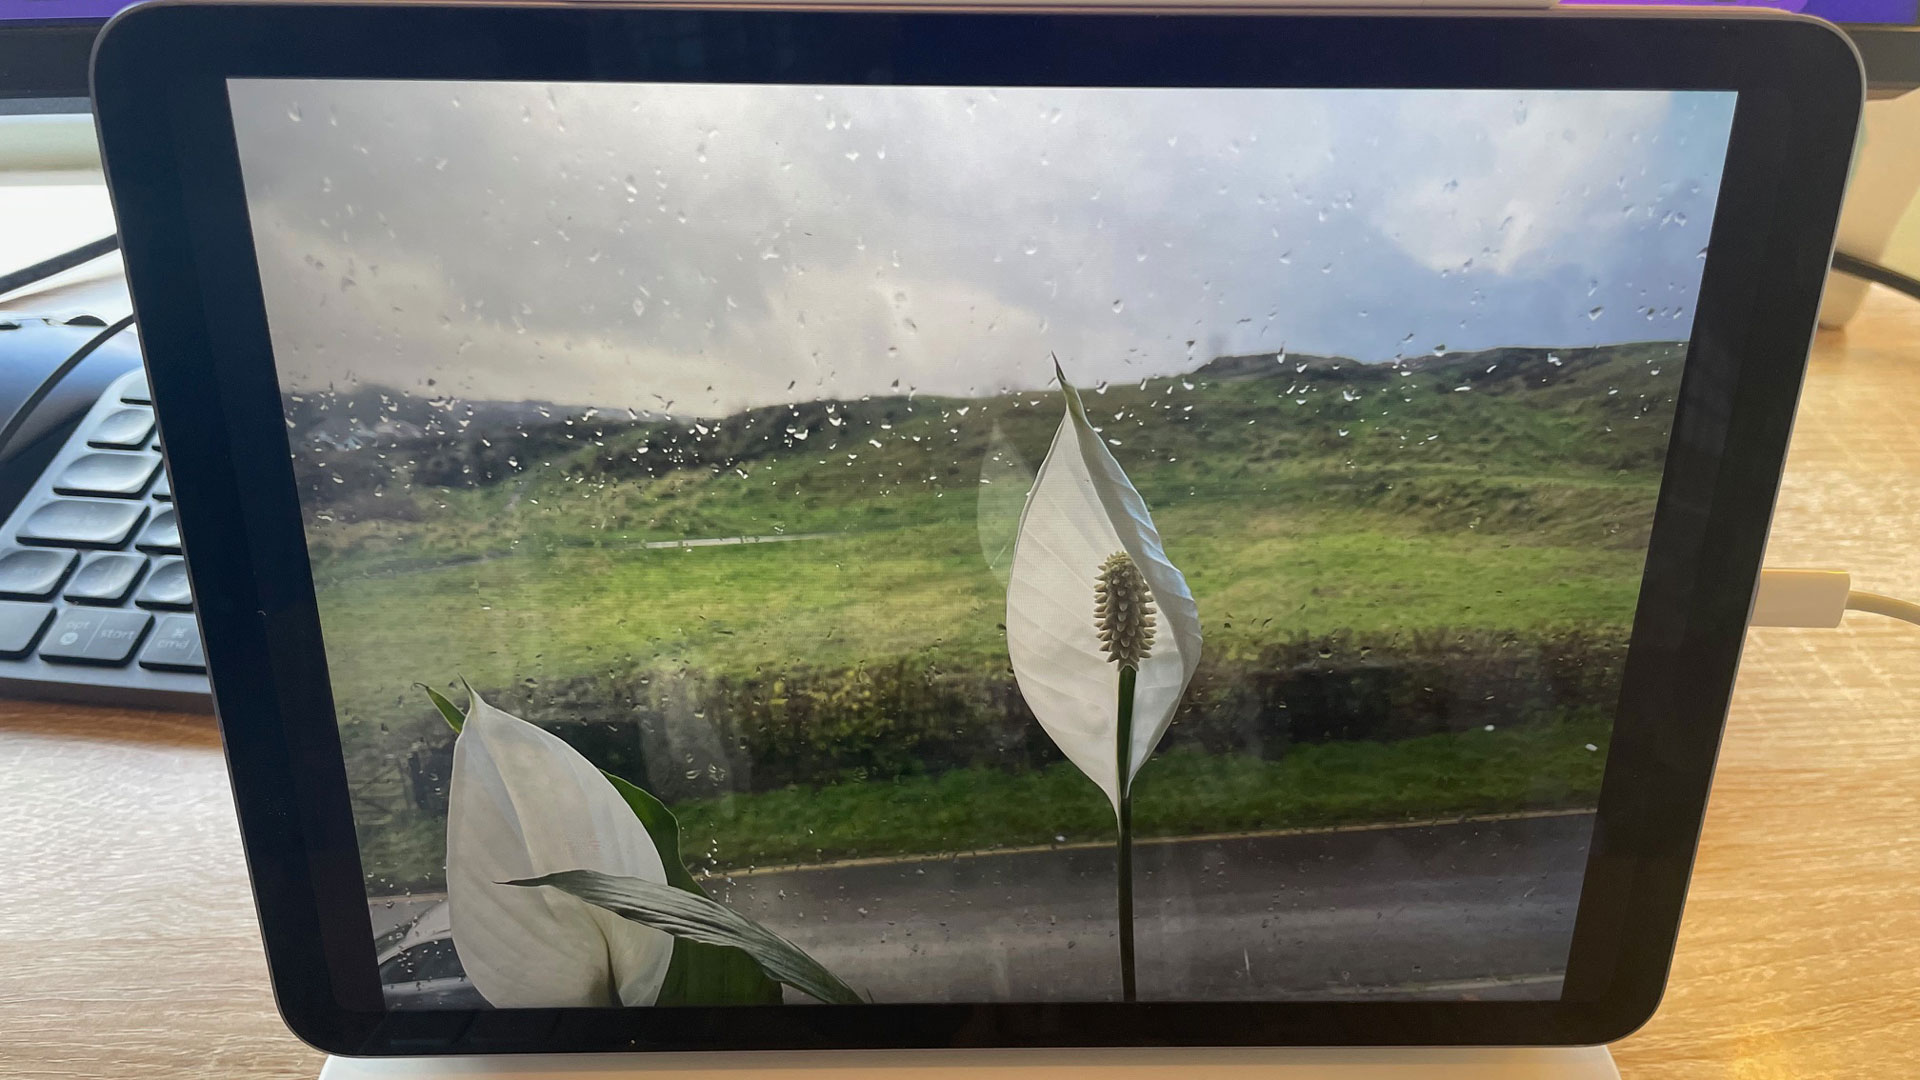 جهاز iPad Air (2022) على مكتب مع صورة زنبق السلام على الشاشة